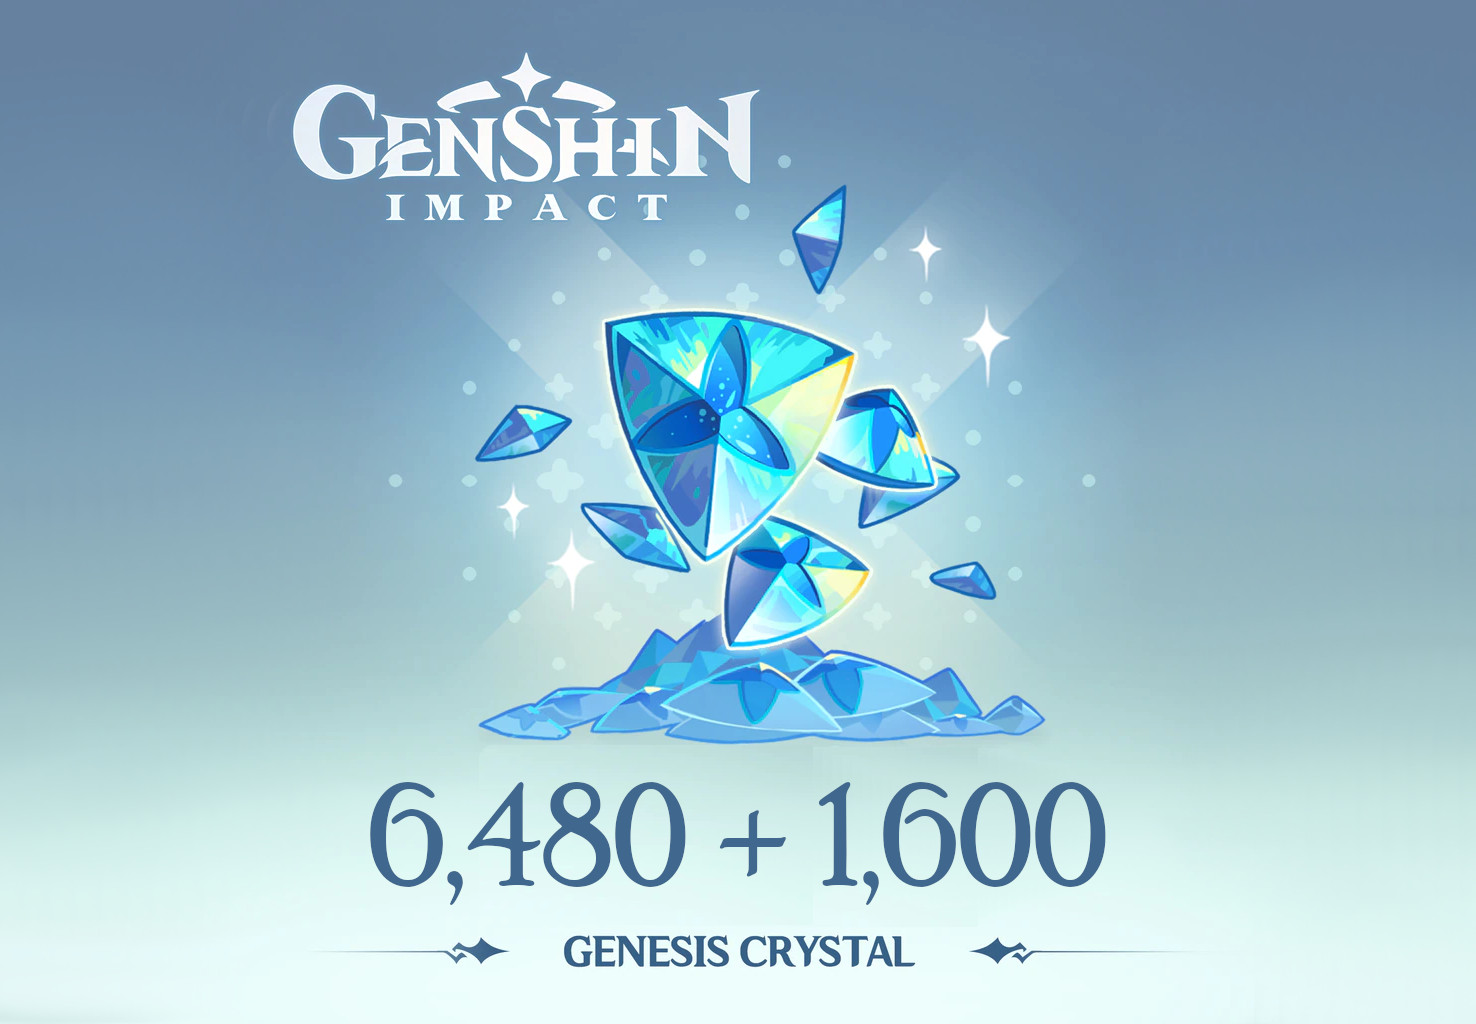 Genshin Impact - 6,480 + 1,600 Genesis Crystals Reidos Voucher, 107.29$